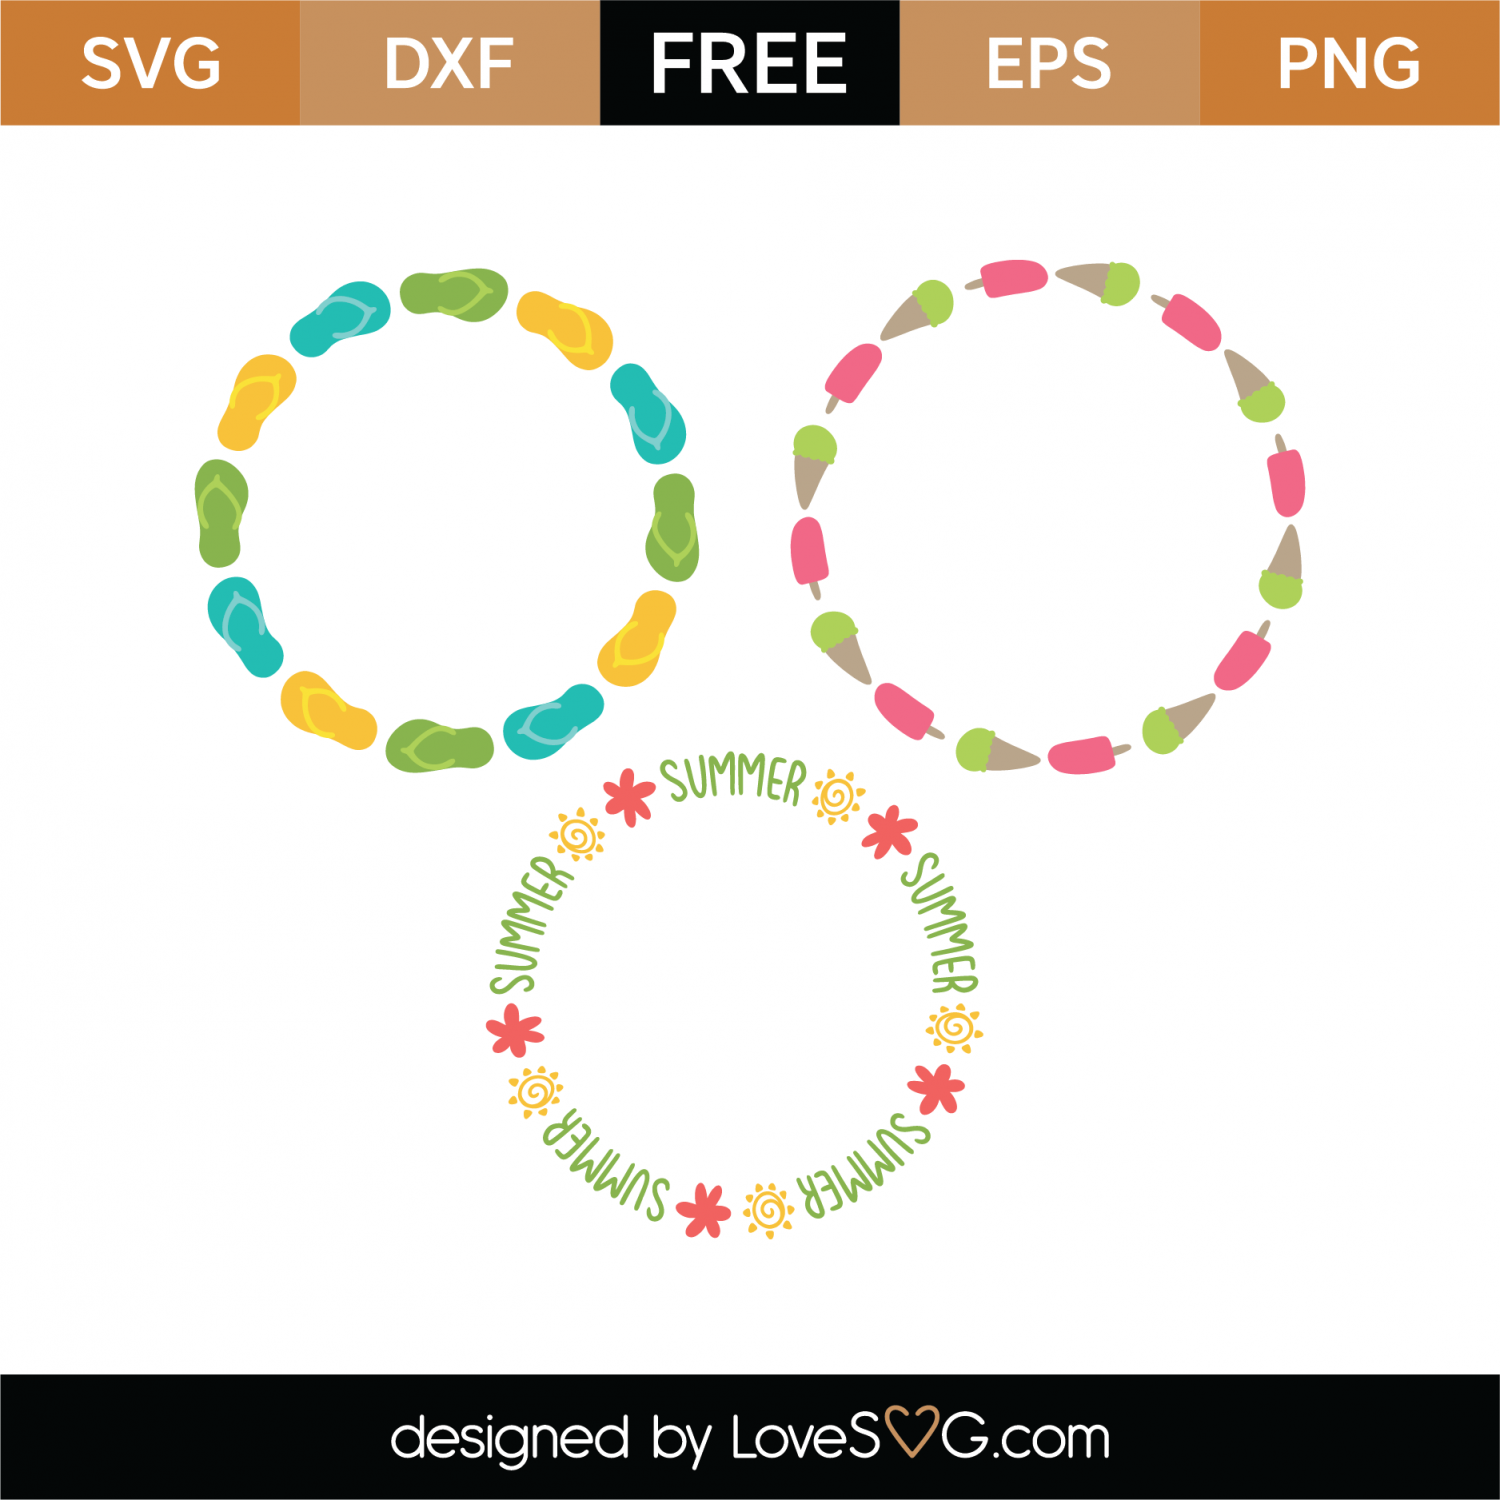 Download Free Summer Monogram Frames SVG Cut File | Lovesvg.com